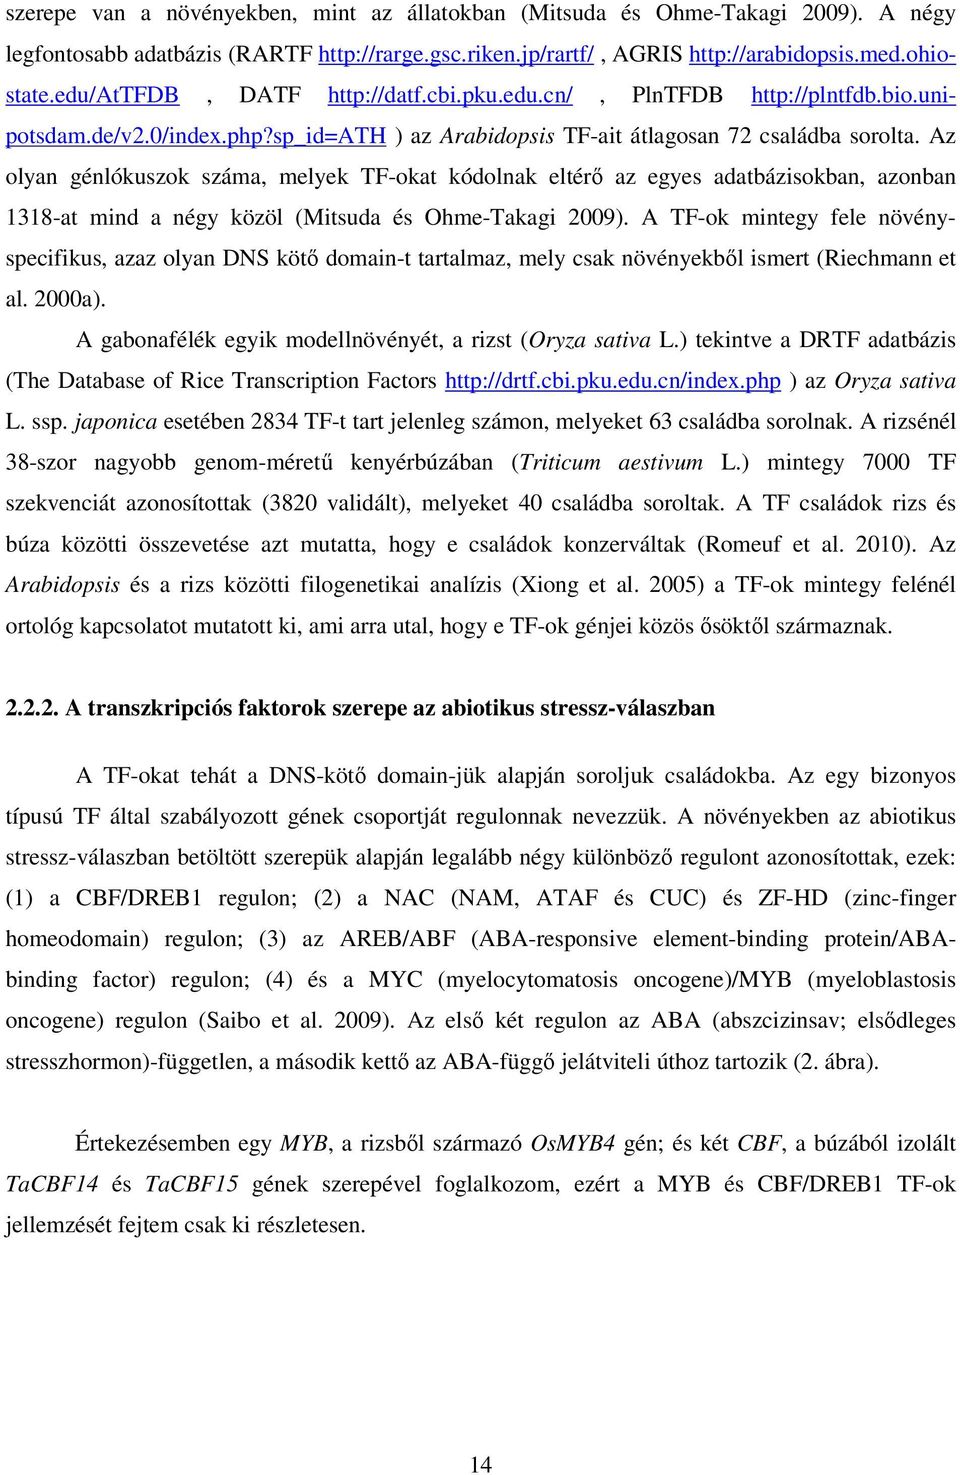 Az olyan génlókuszok száma, melyek TF-okat kódolnak eltérő az egyes adatbázisokban, azonban 1318-at mind a négy közöl (Mitsuda és Ohme-Takagi 2009).